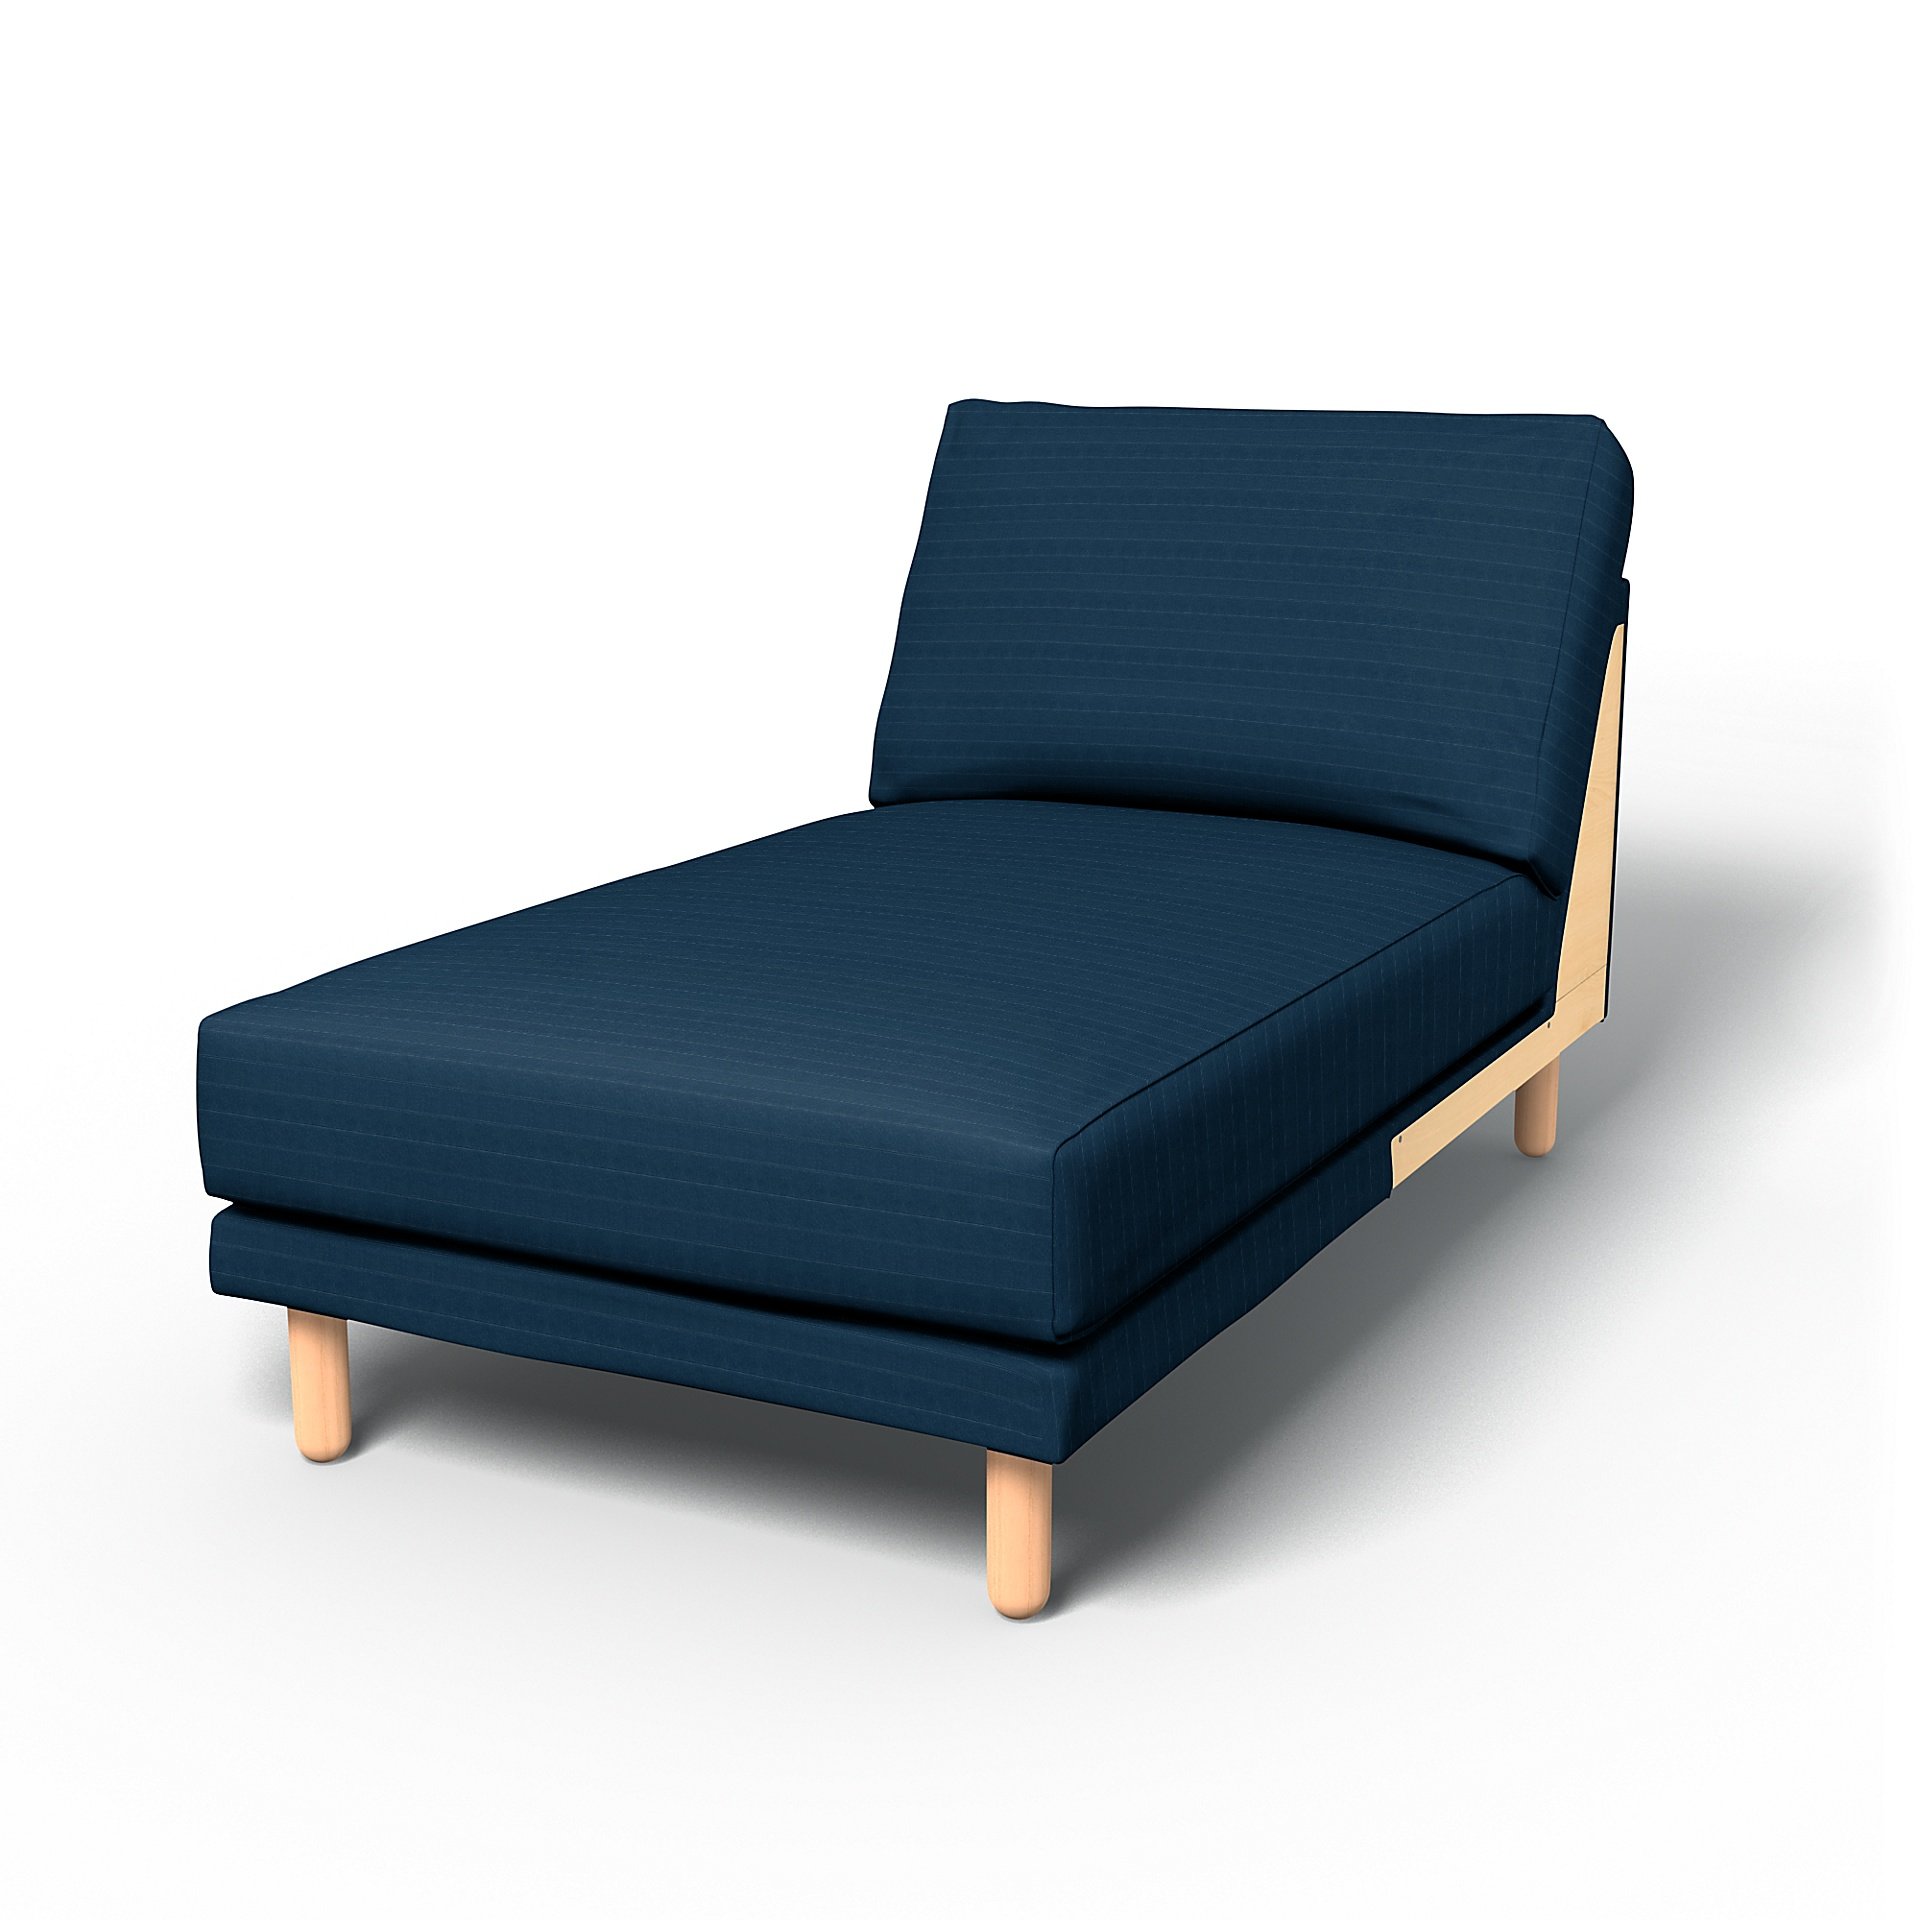 IKEA - Norsborg Chaise Longue Add-on Unit Cover, Denim Blue, Velvet - Bemz